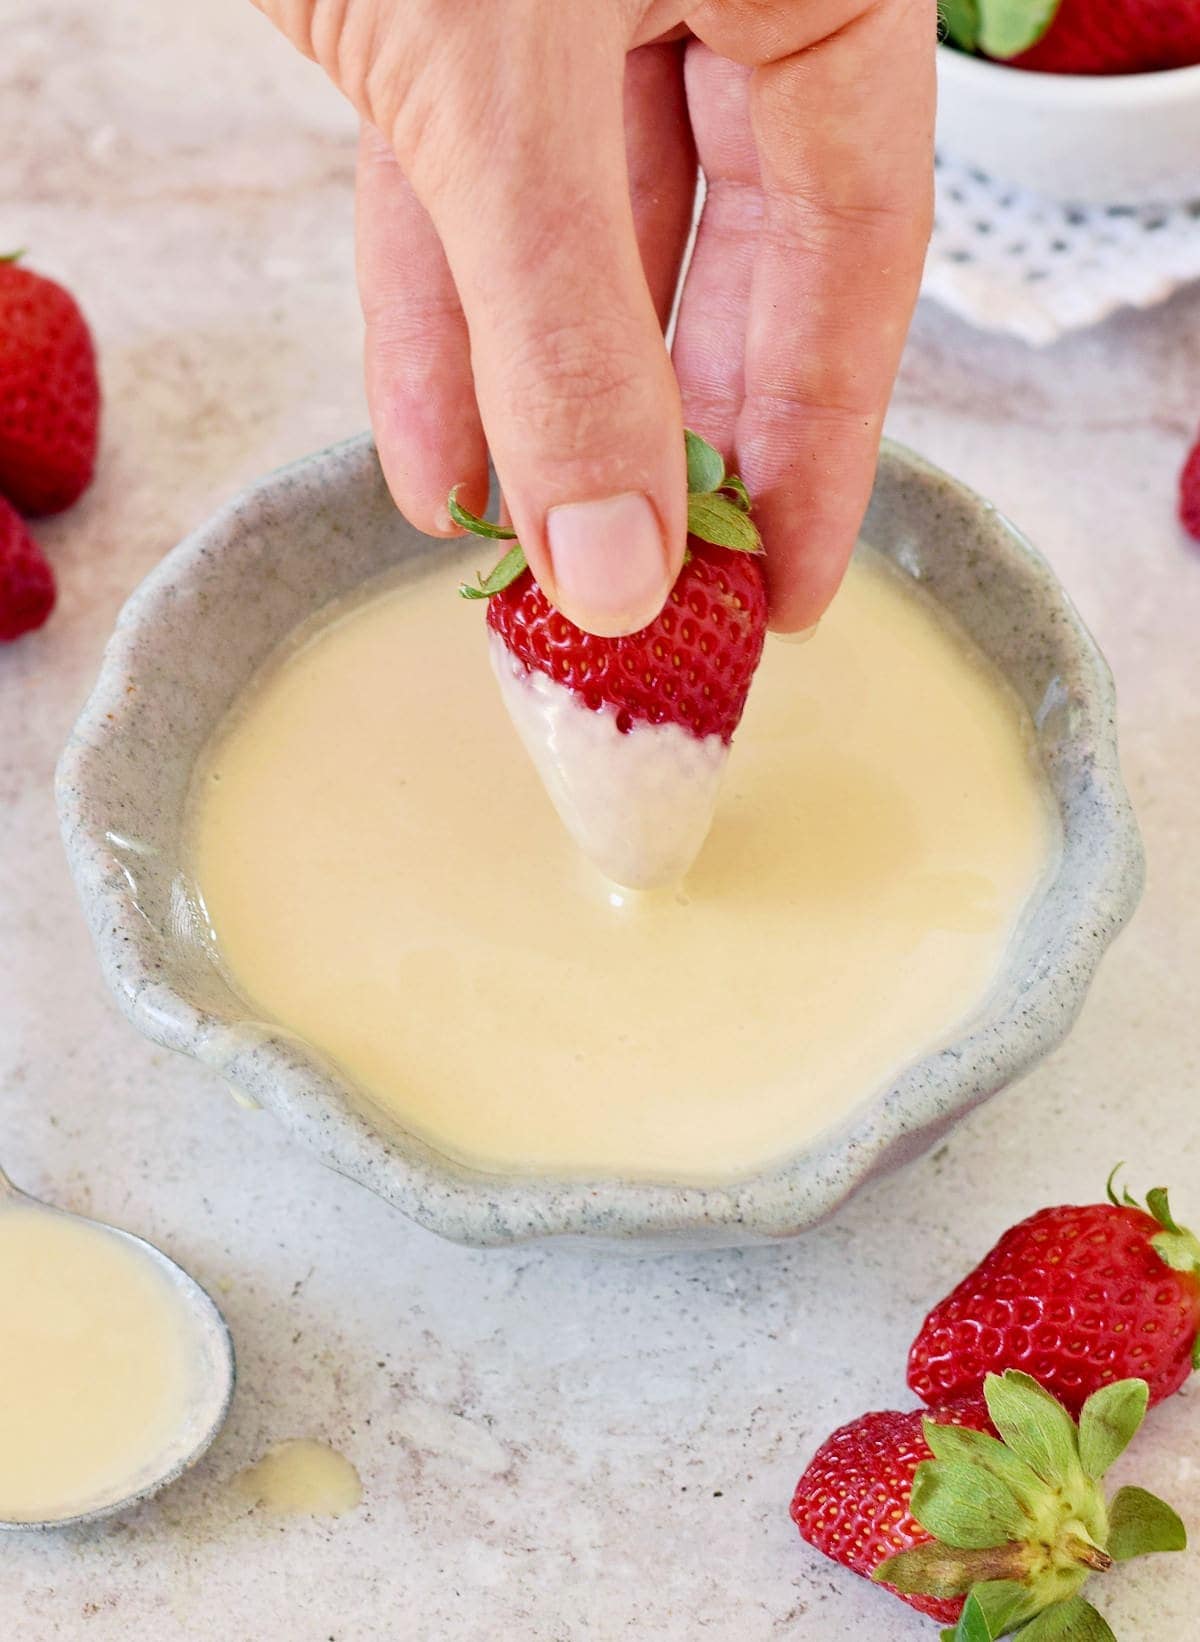 Hand taucht eine Erdbeere in eine Schüssel mit selbstgemachter süßer evaporated milk